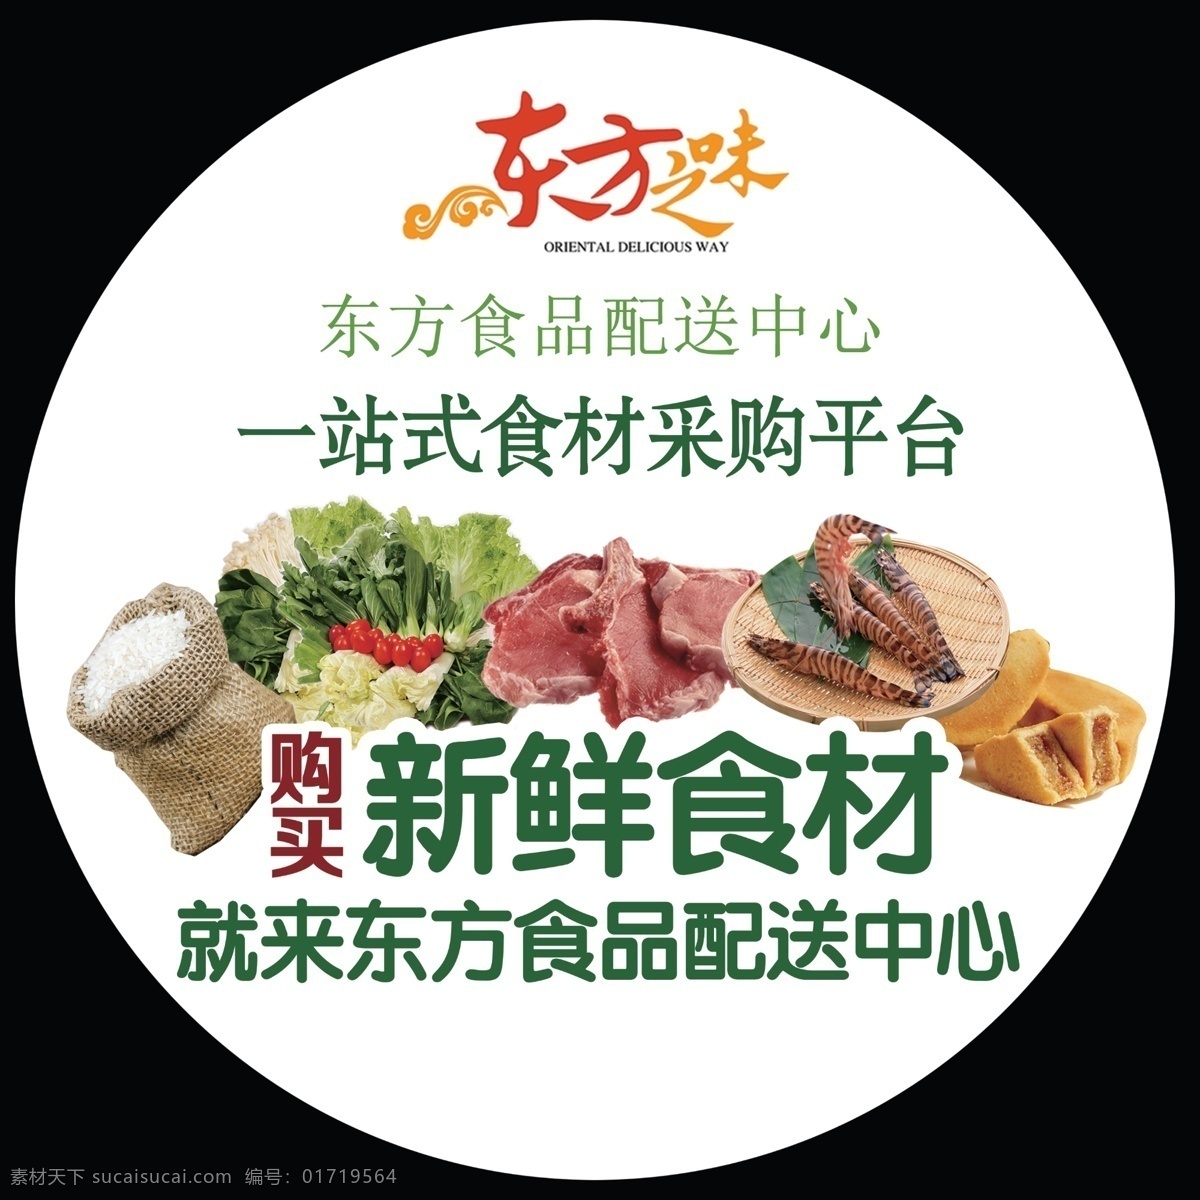 食品 配送 中心 贴 分层素材 蔬菜 广告 海报